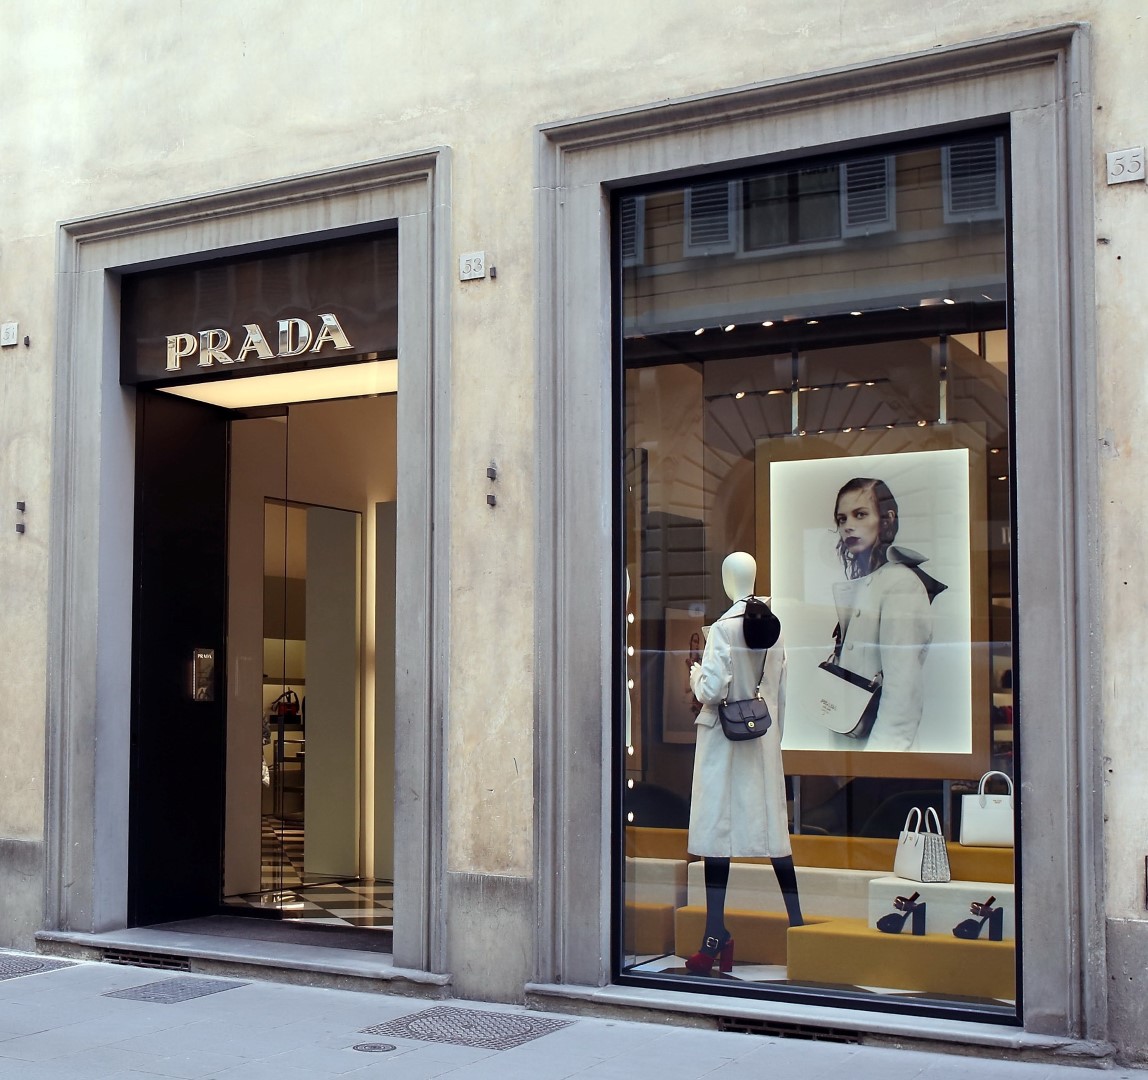 Prada Uomo vetrine Firenze: la sofisticata rappresentazione del progetto dis-dressed